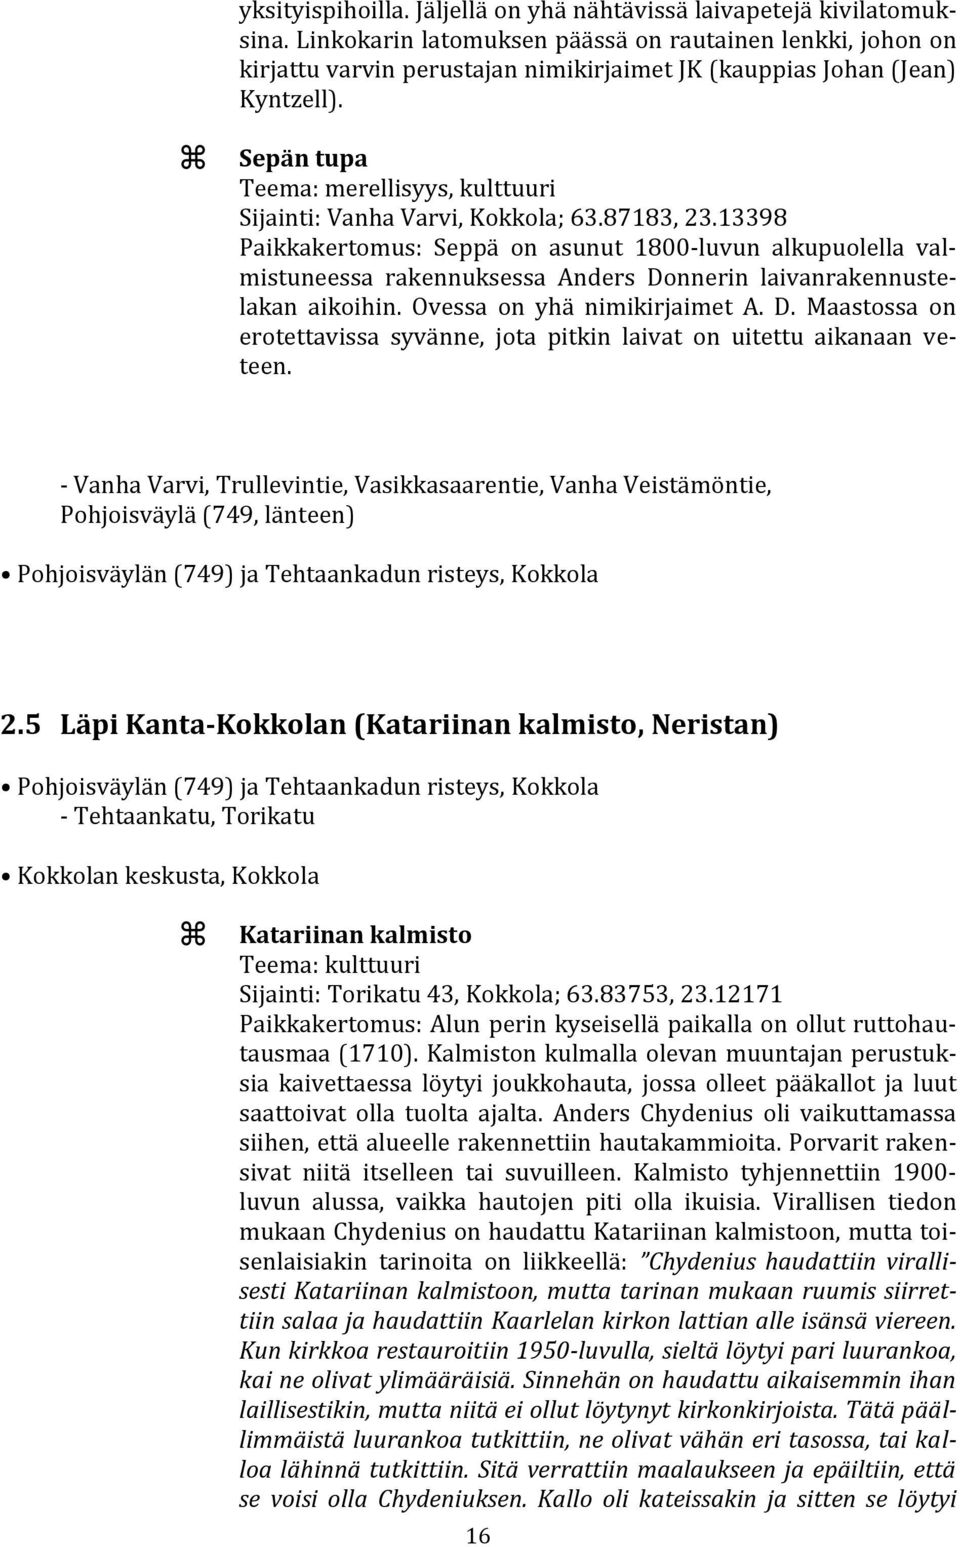 Sepän tupa Teema: merellisyys, kulttuuri Sijainti: Vanha Varvi, Kokkola; 63.87183, 23.